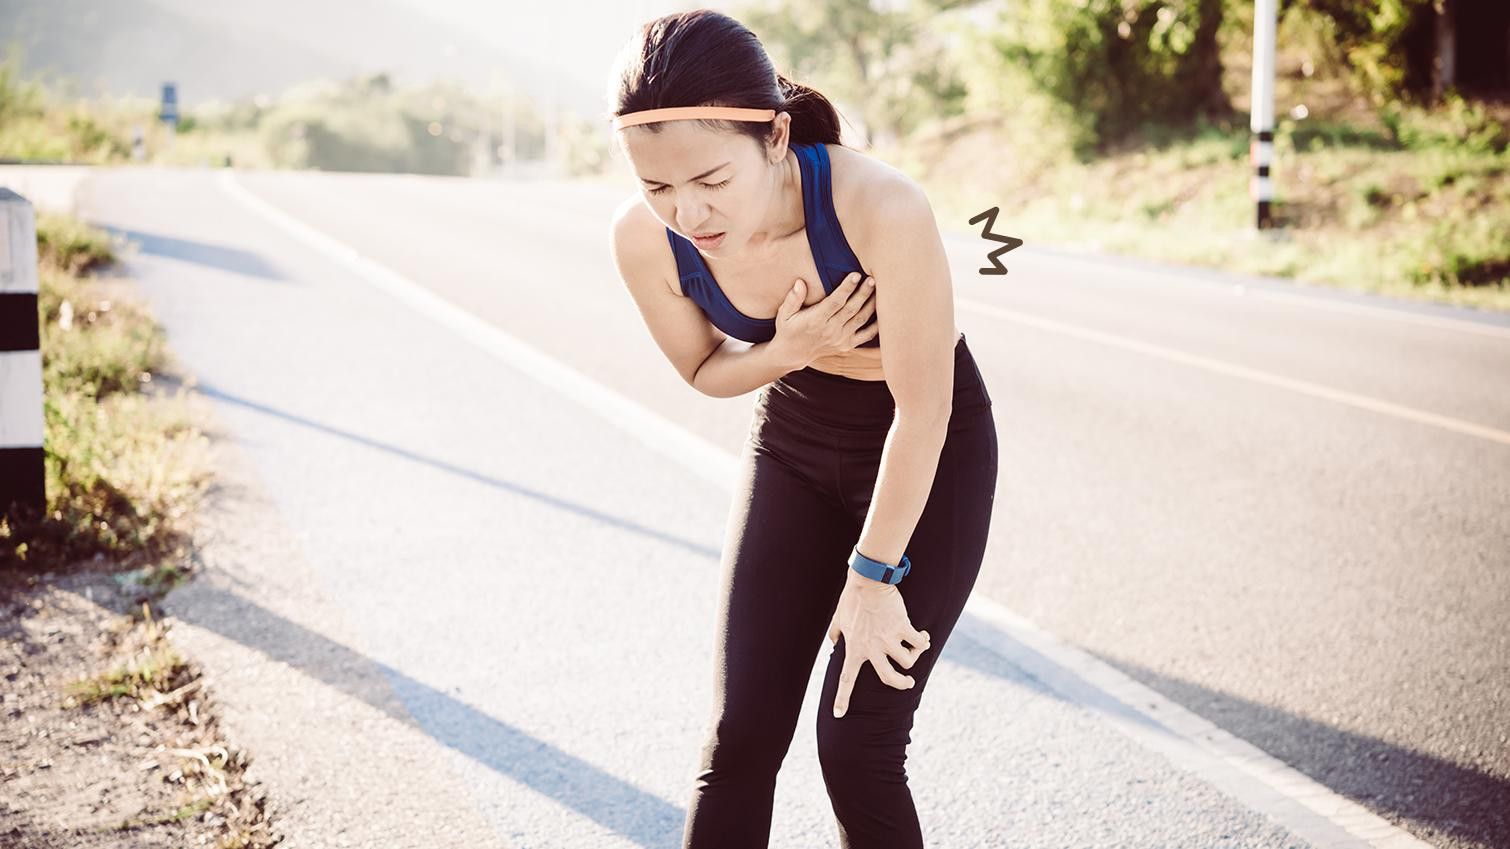 Ini 4 Jenis Olahraga yang Tidak Disarankan untuk Penderita Penyakit Jantung